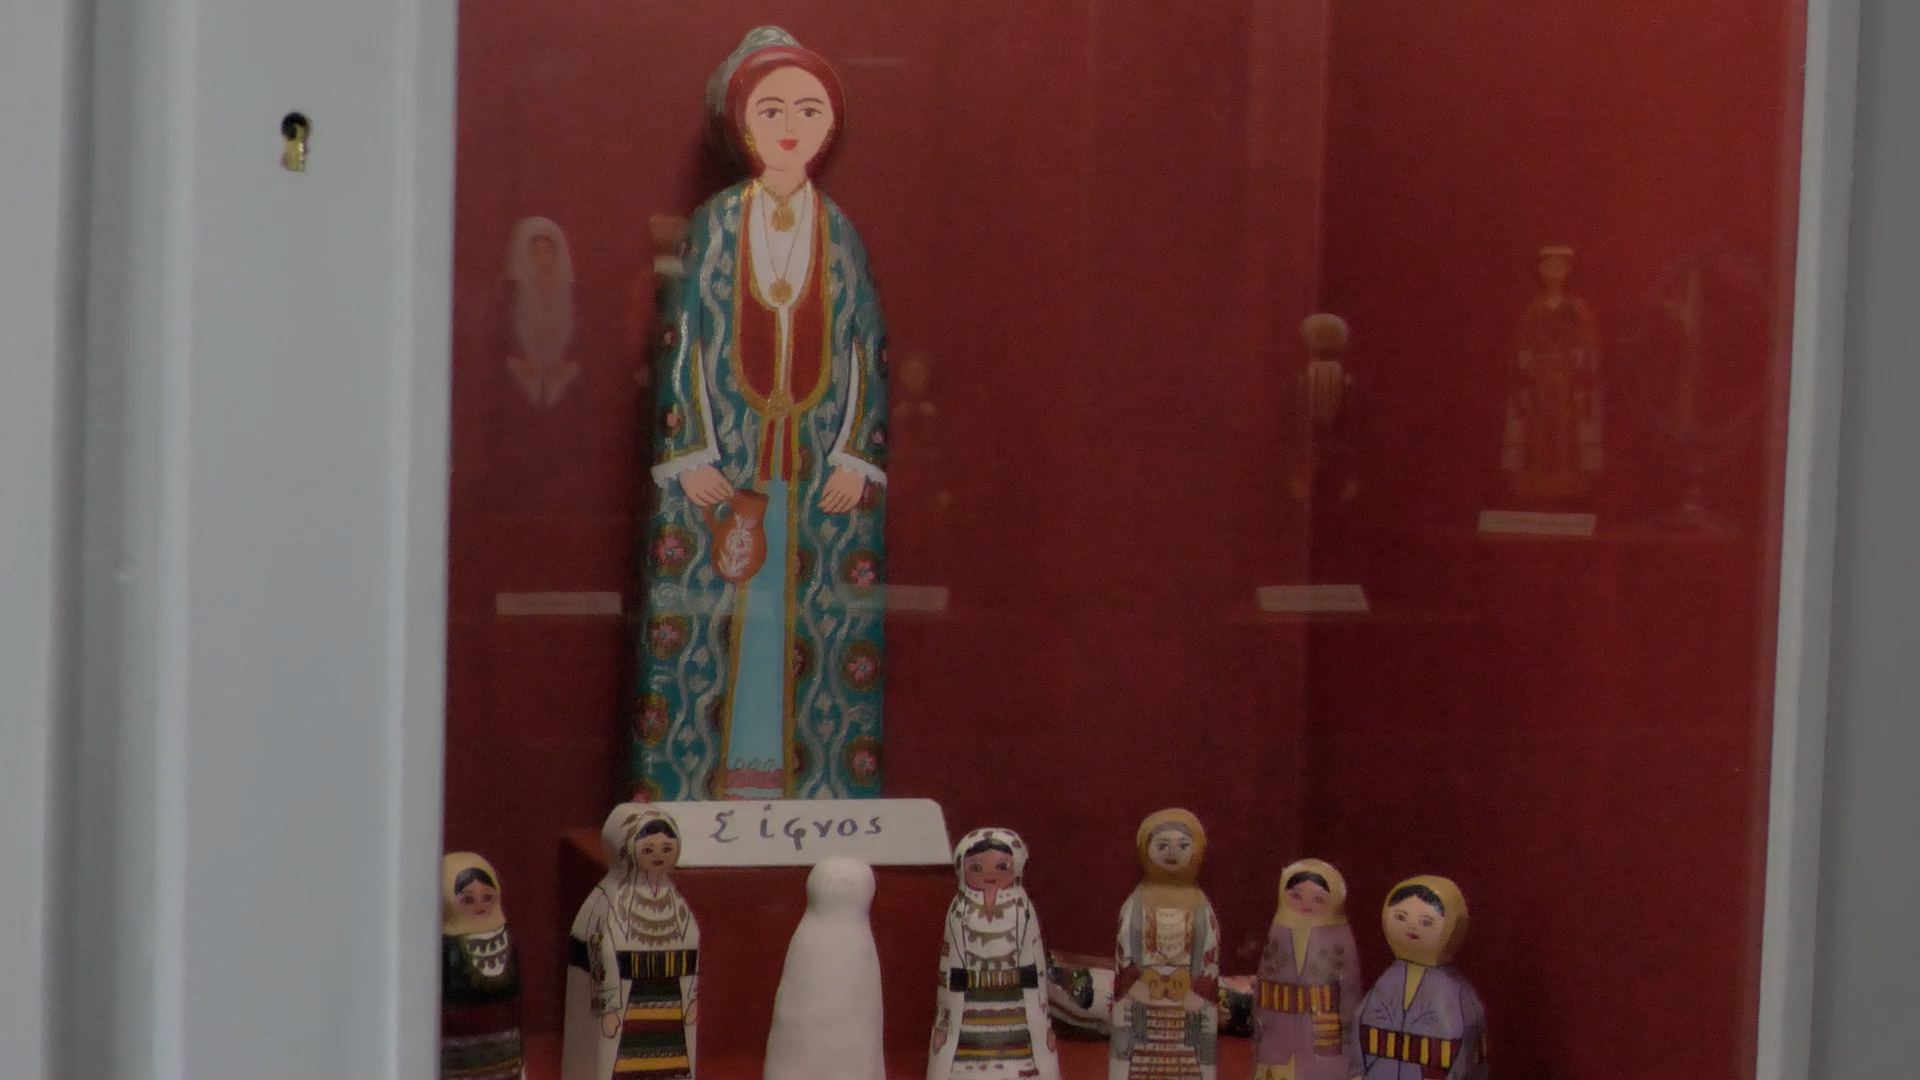 Μουσείο παραδοσιακών επαγγελμάτων στην Αγιάσο